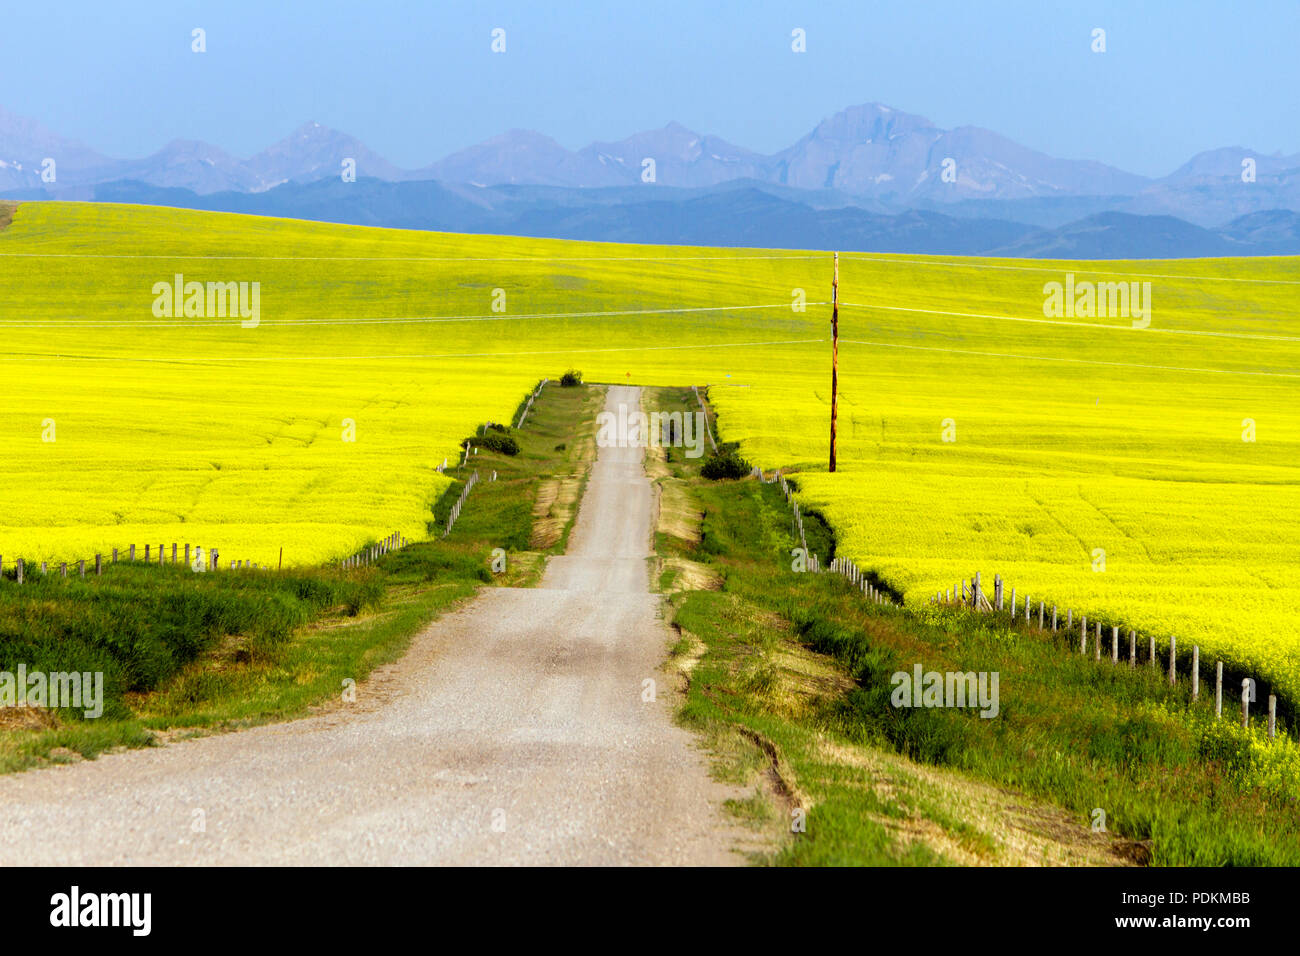 Un paese rurale paesaggio stradale scenic circondato da un giallo canola field in piena fioritura nel torrente del rullo di estrazione, Alberta, Canada. Foto Stock